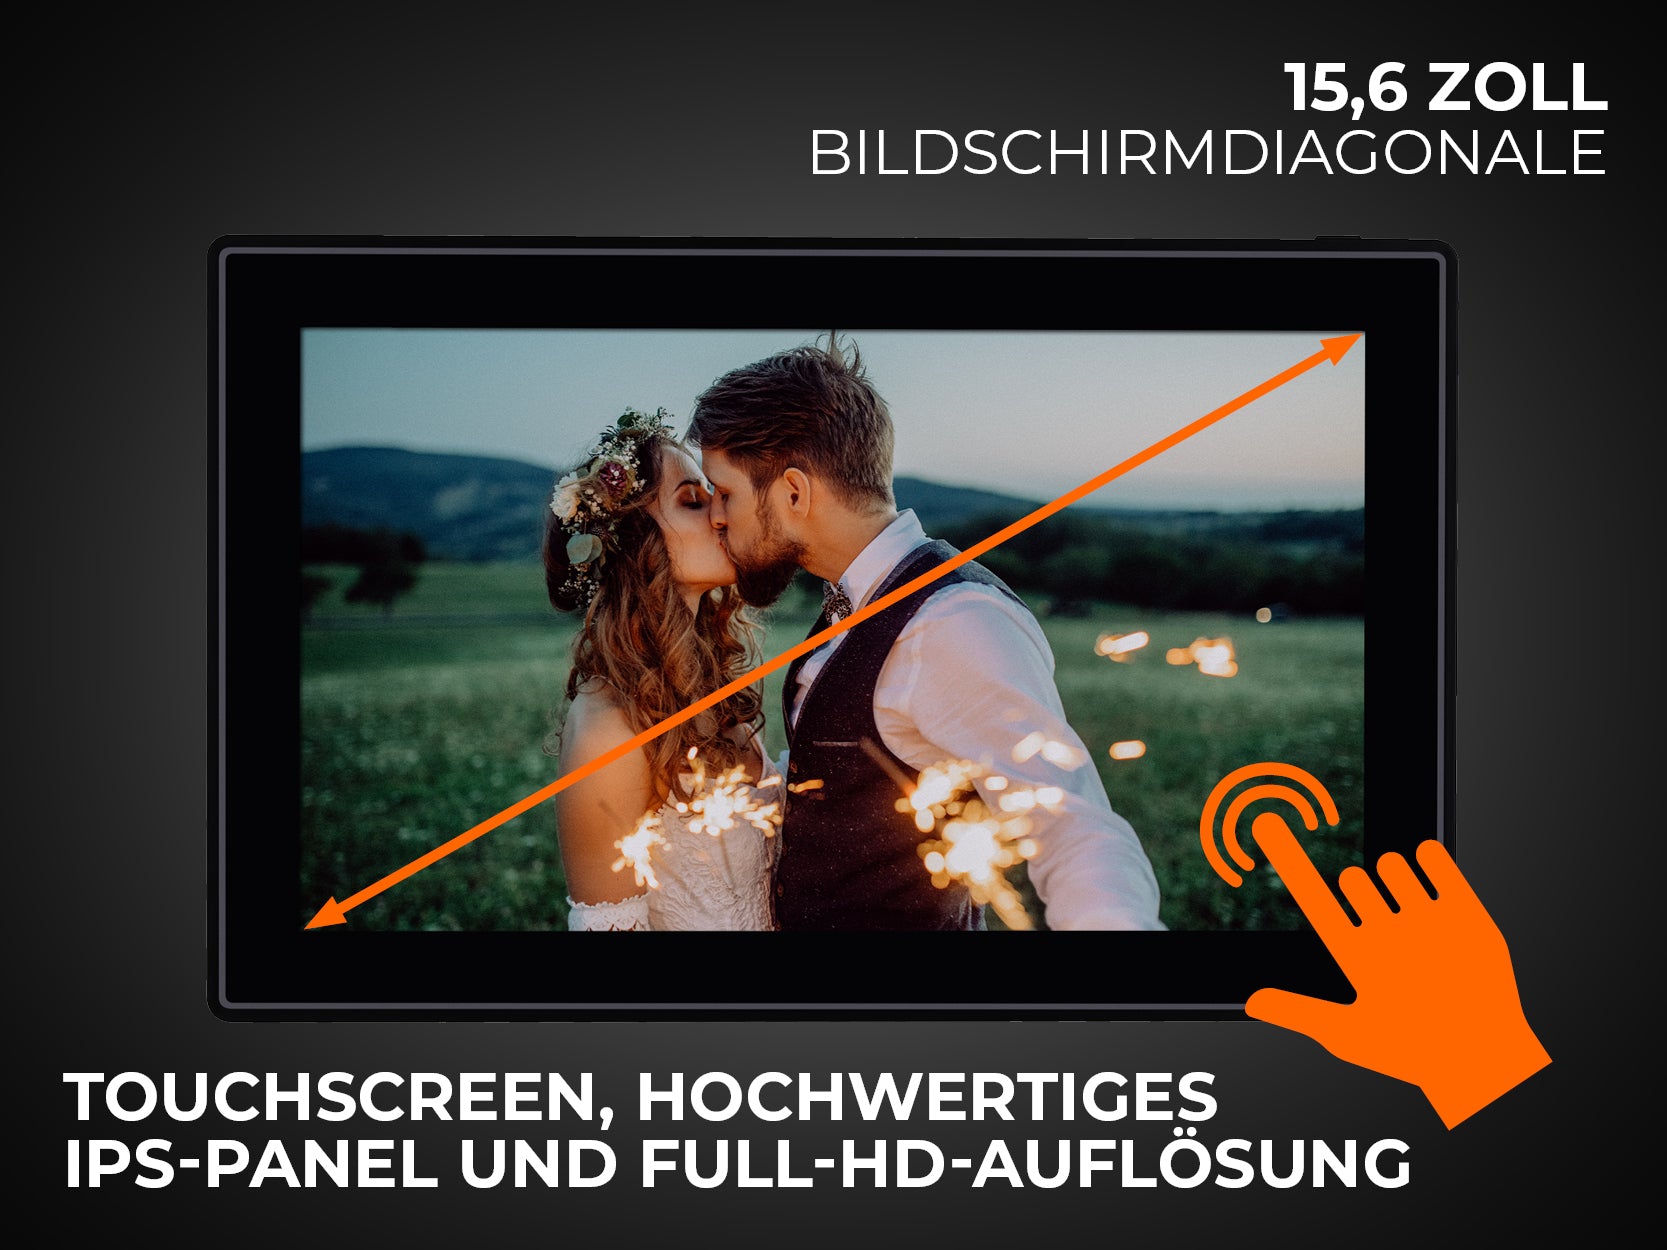 Touchscreen, hochwertiges IPS-Panel und Full-HD-Auflösung